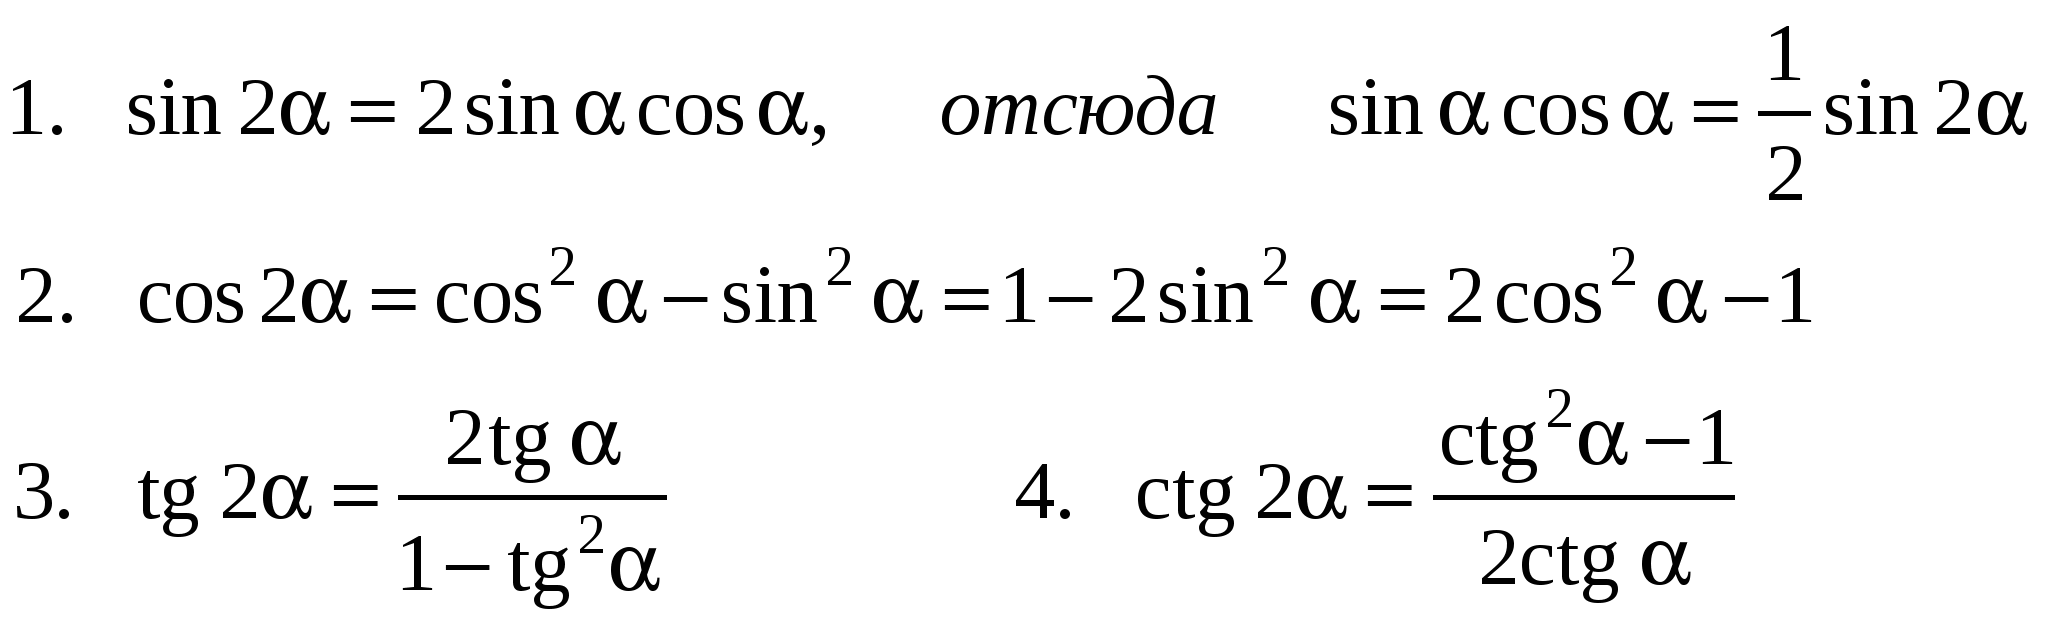 Tg sin2 cos2. Формулы тройного угла тригонометрических функций. Алгебра 10 класс формулы двойного угла. Формулы двойного аргумента в тригонометрии. Тангенс двойного угла формула.